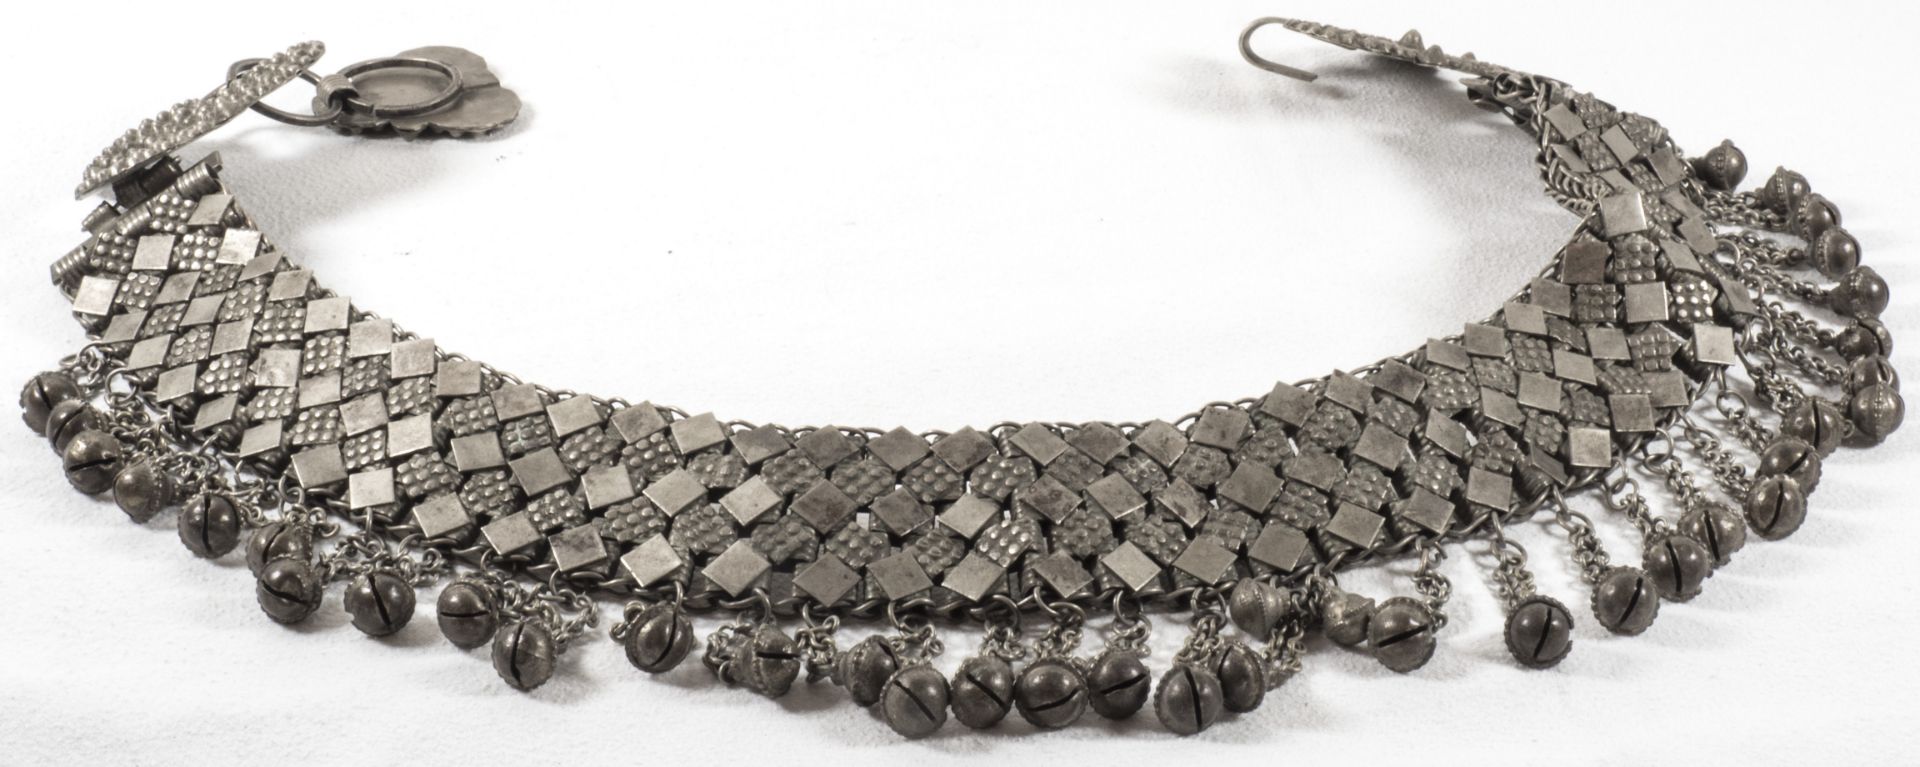 Trachtengürtel, Metall, mit Glöckchen als Abhängungen. Länge: ca. 80 cm.